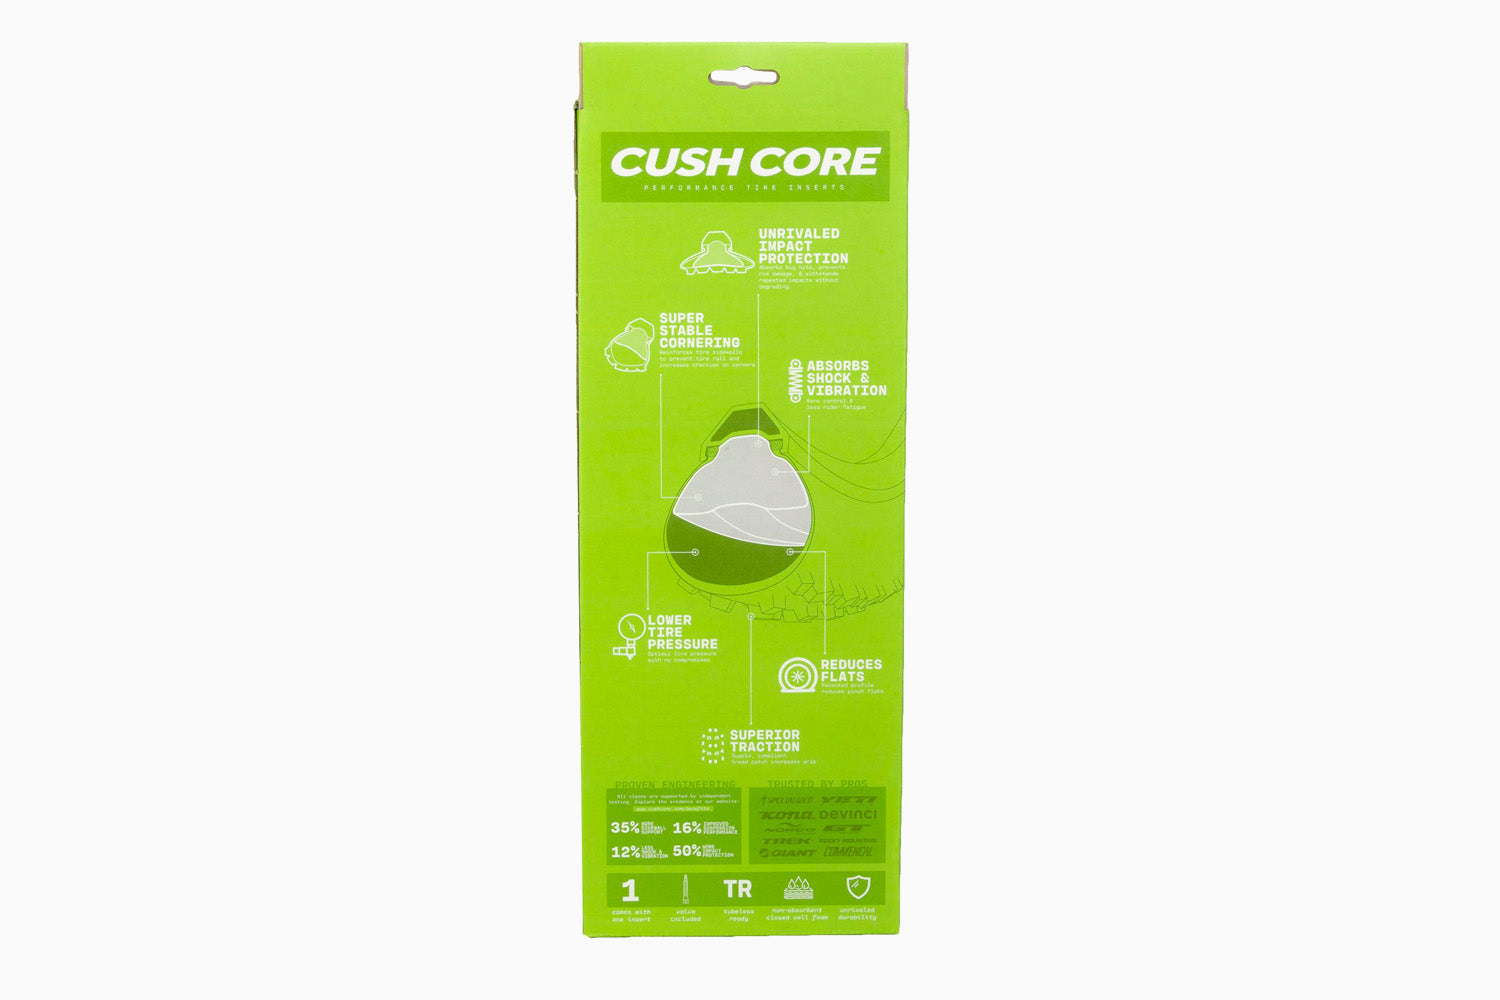 Cushcore Pro 27.5 (upgrade)